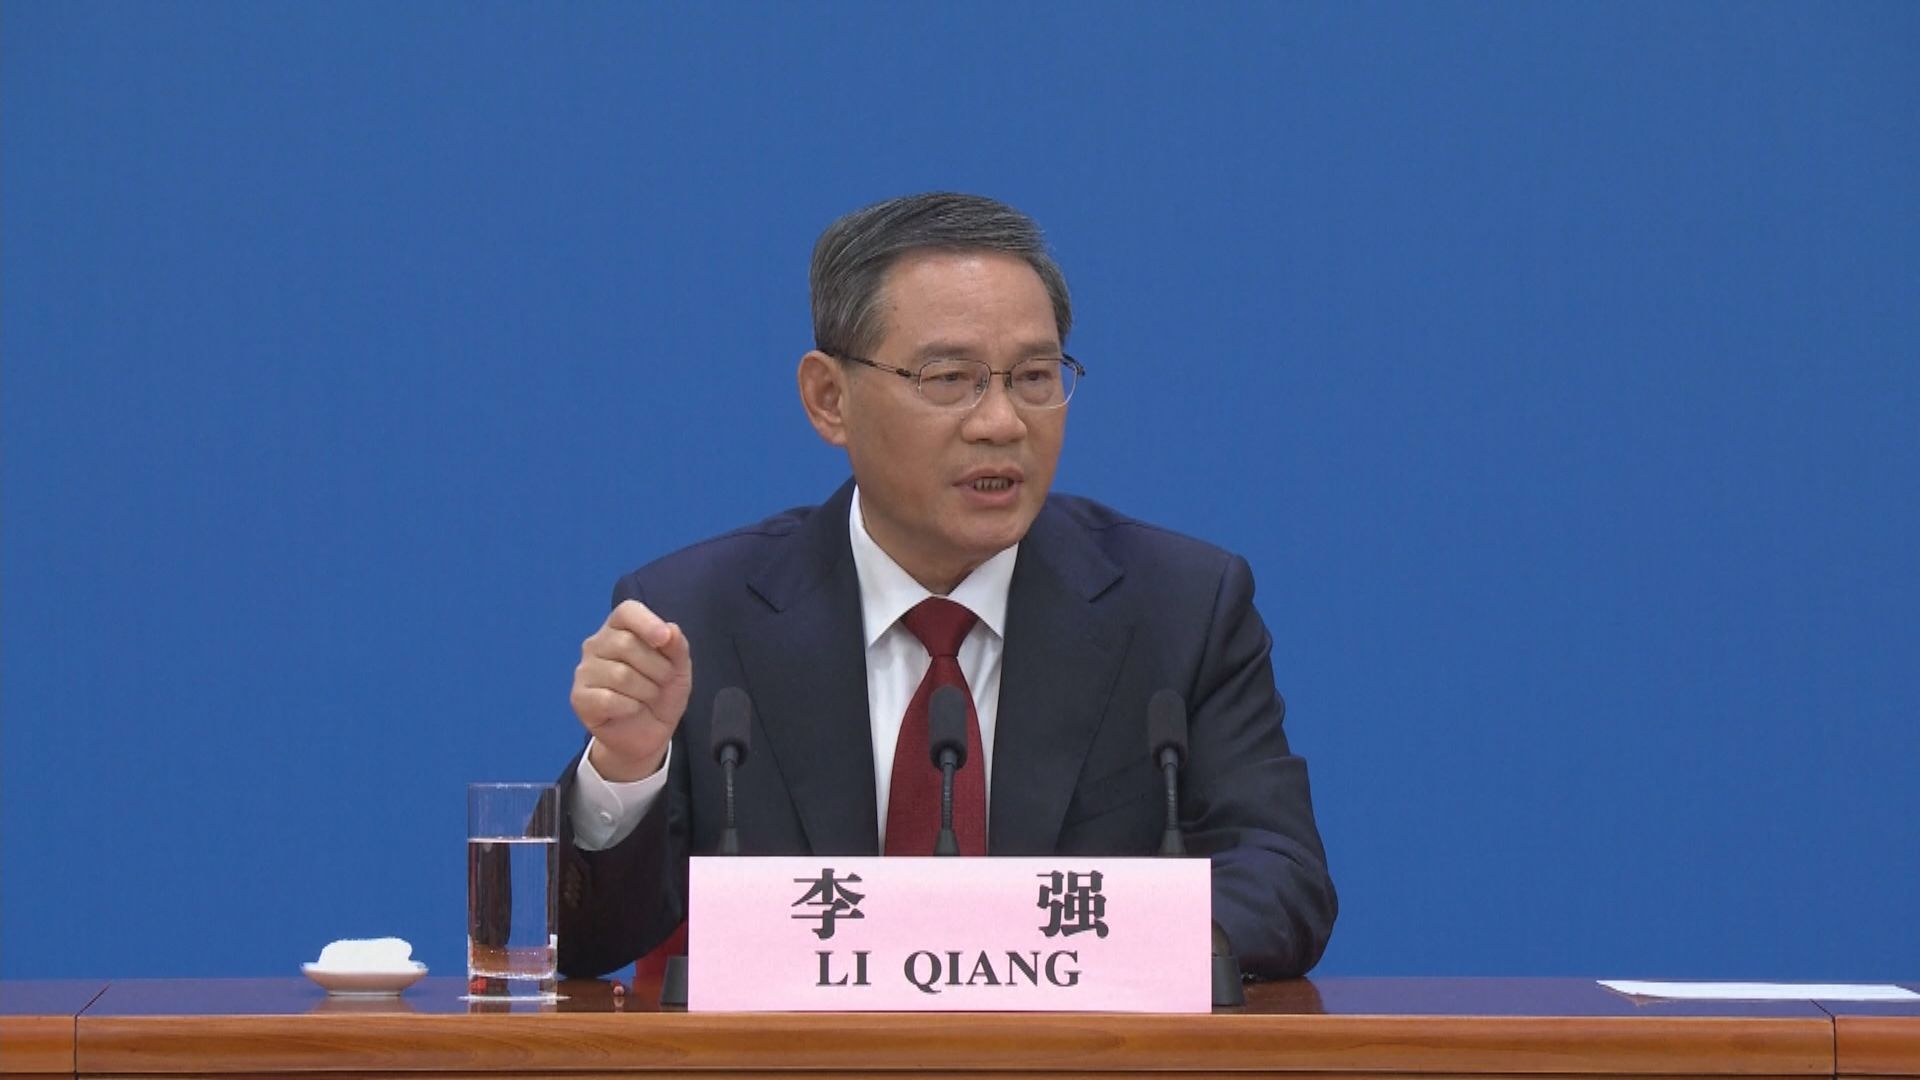 總理李強將出席上海進博會開幕式 李家超明率團訪滬三日